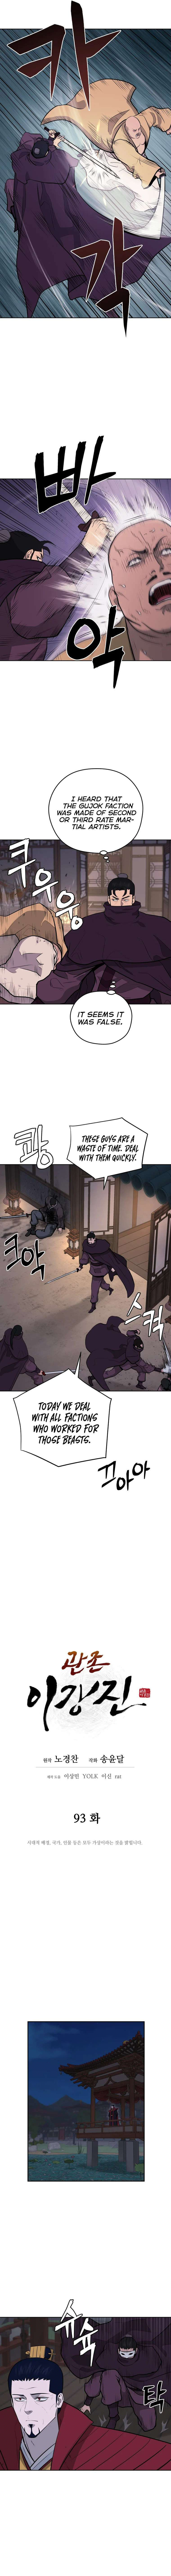 Gwanjeon: Kang Jin Lee - chapter 93 - #4